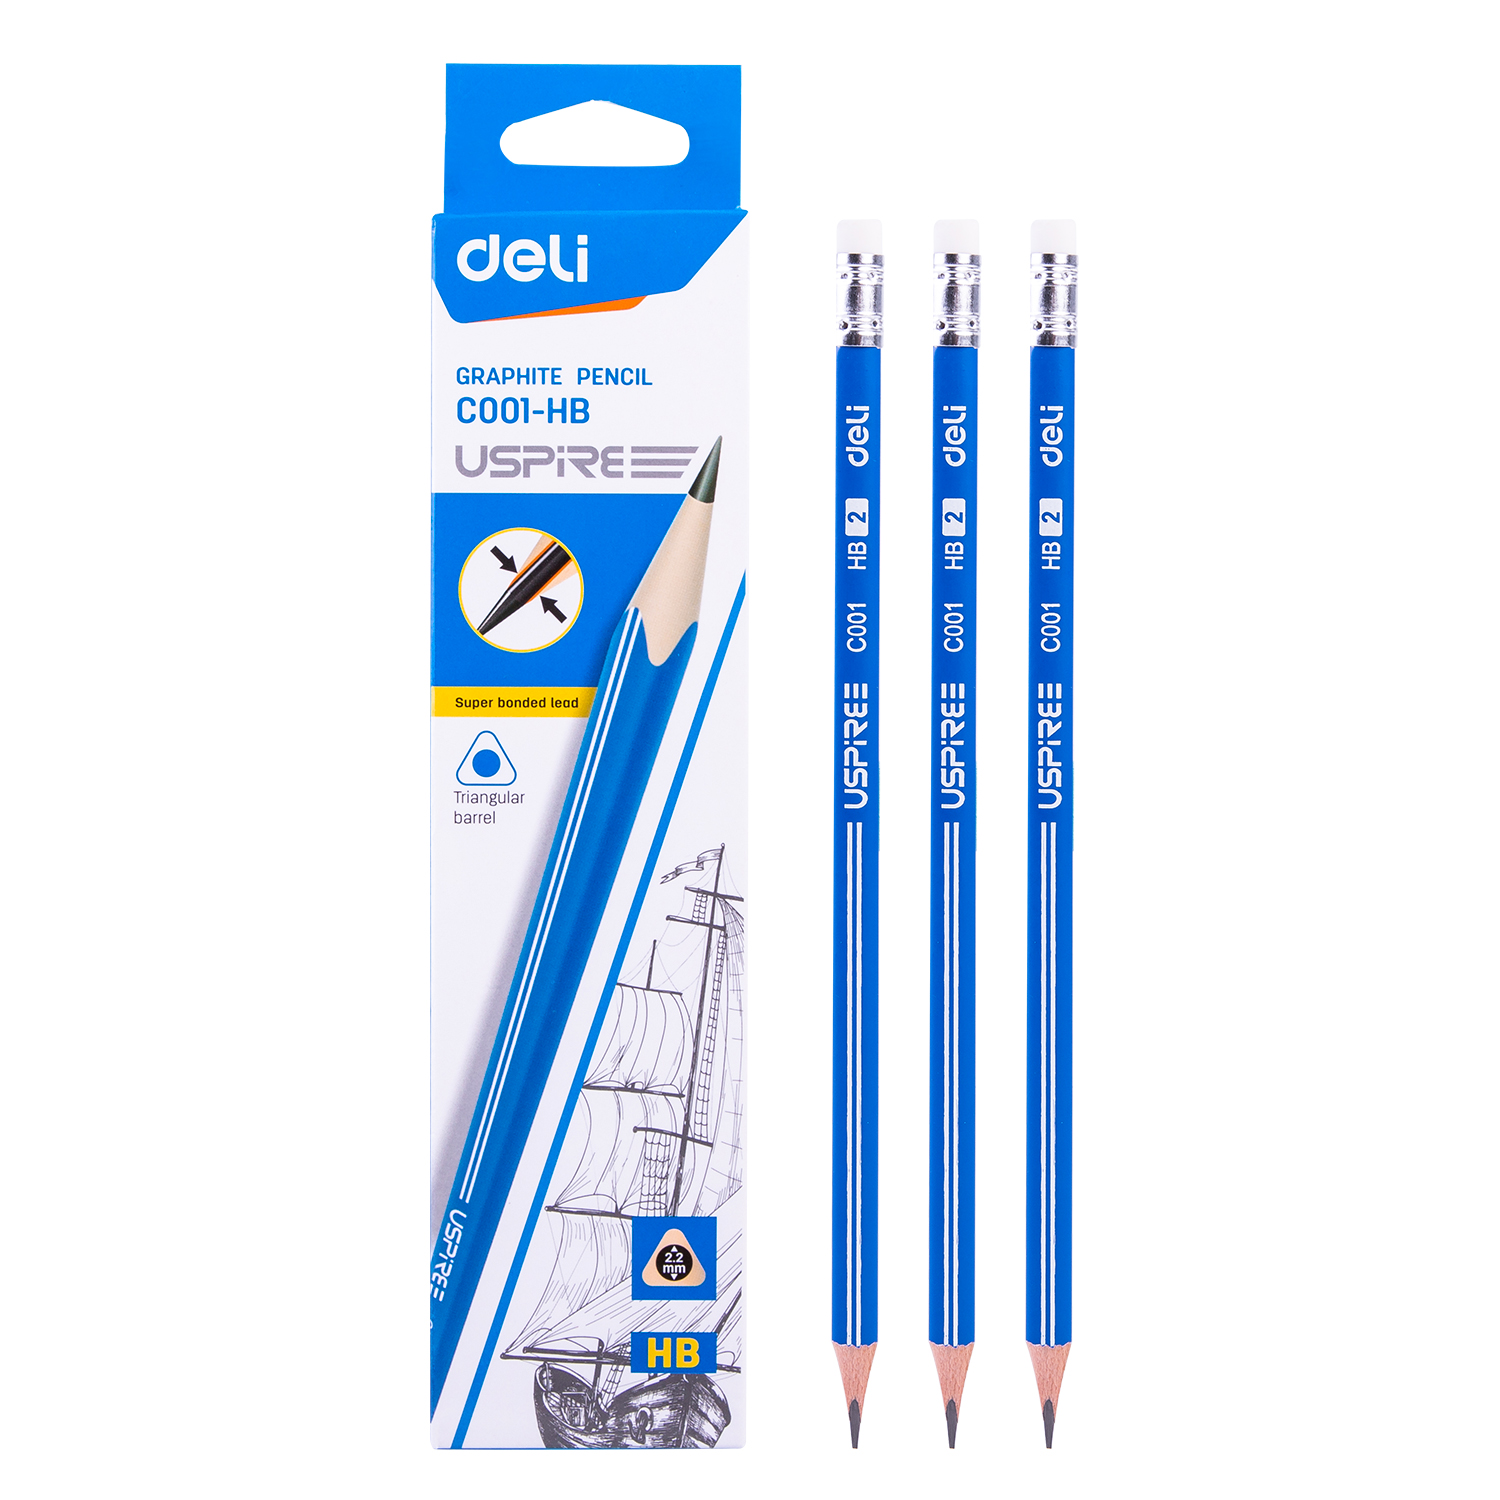 Deli-EC001-HB Graphite Pencil